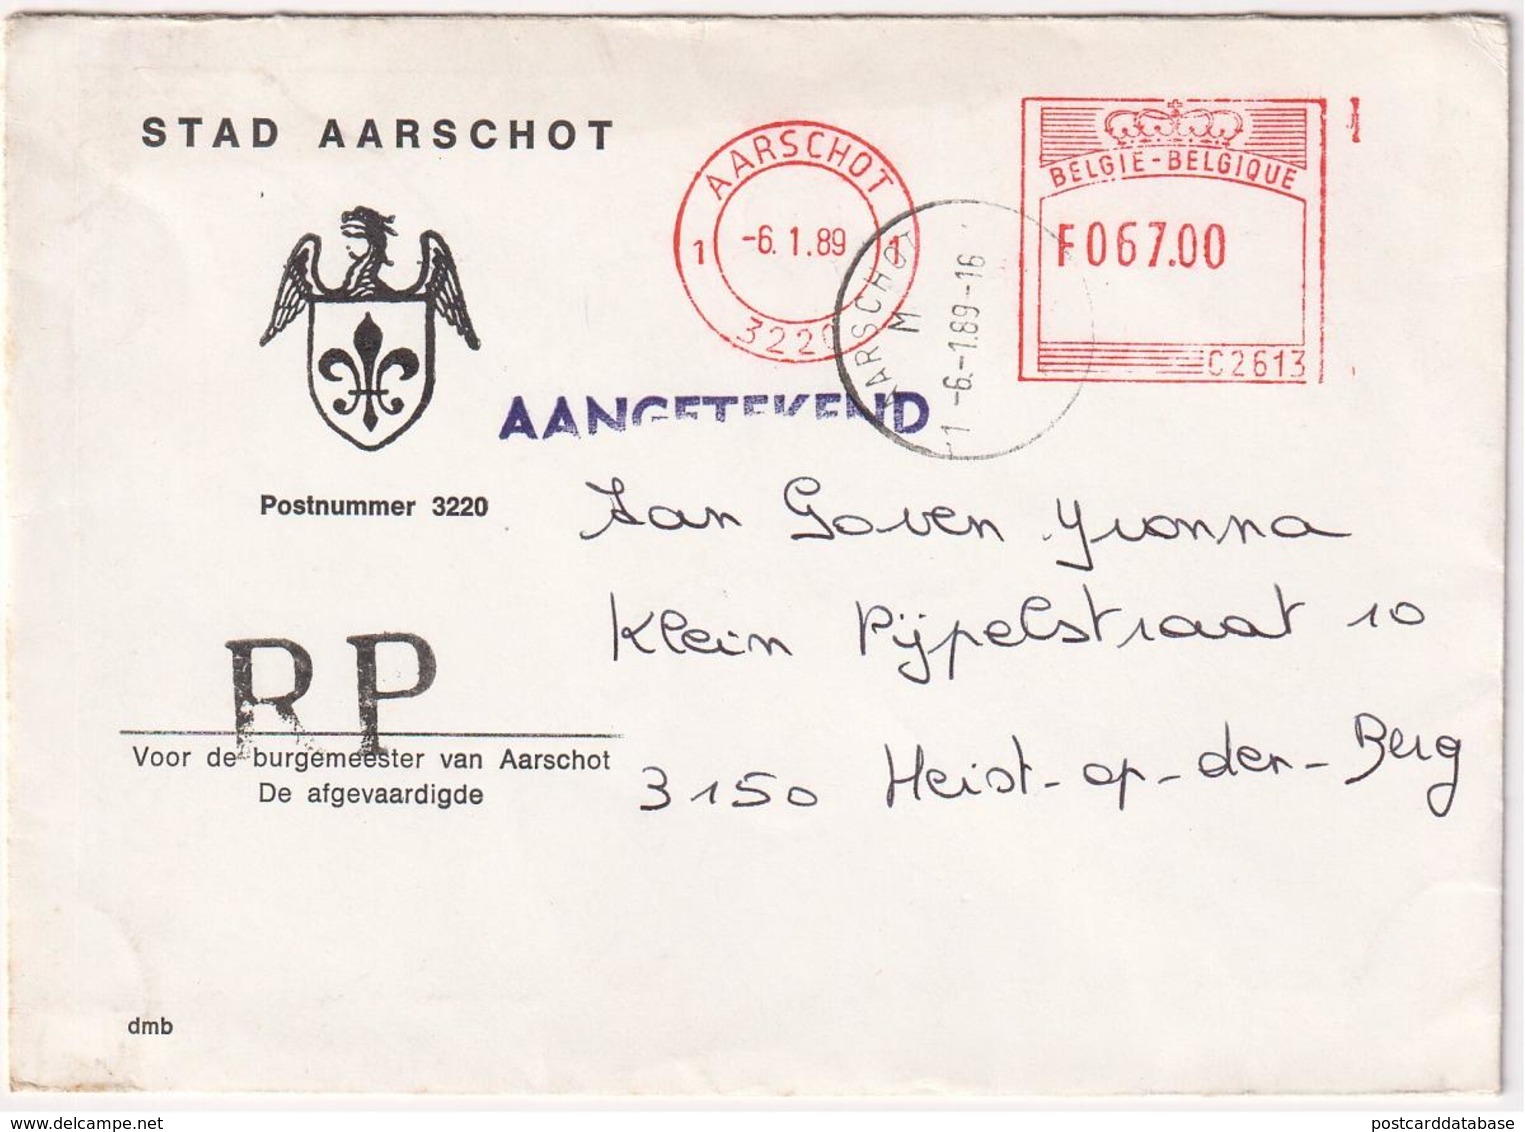 Stad Aarschot - Aangetekend - Registered Mail 1989 - 1980-1999